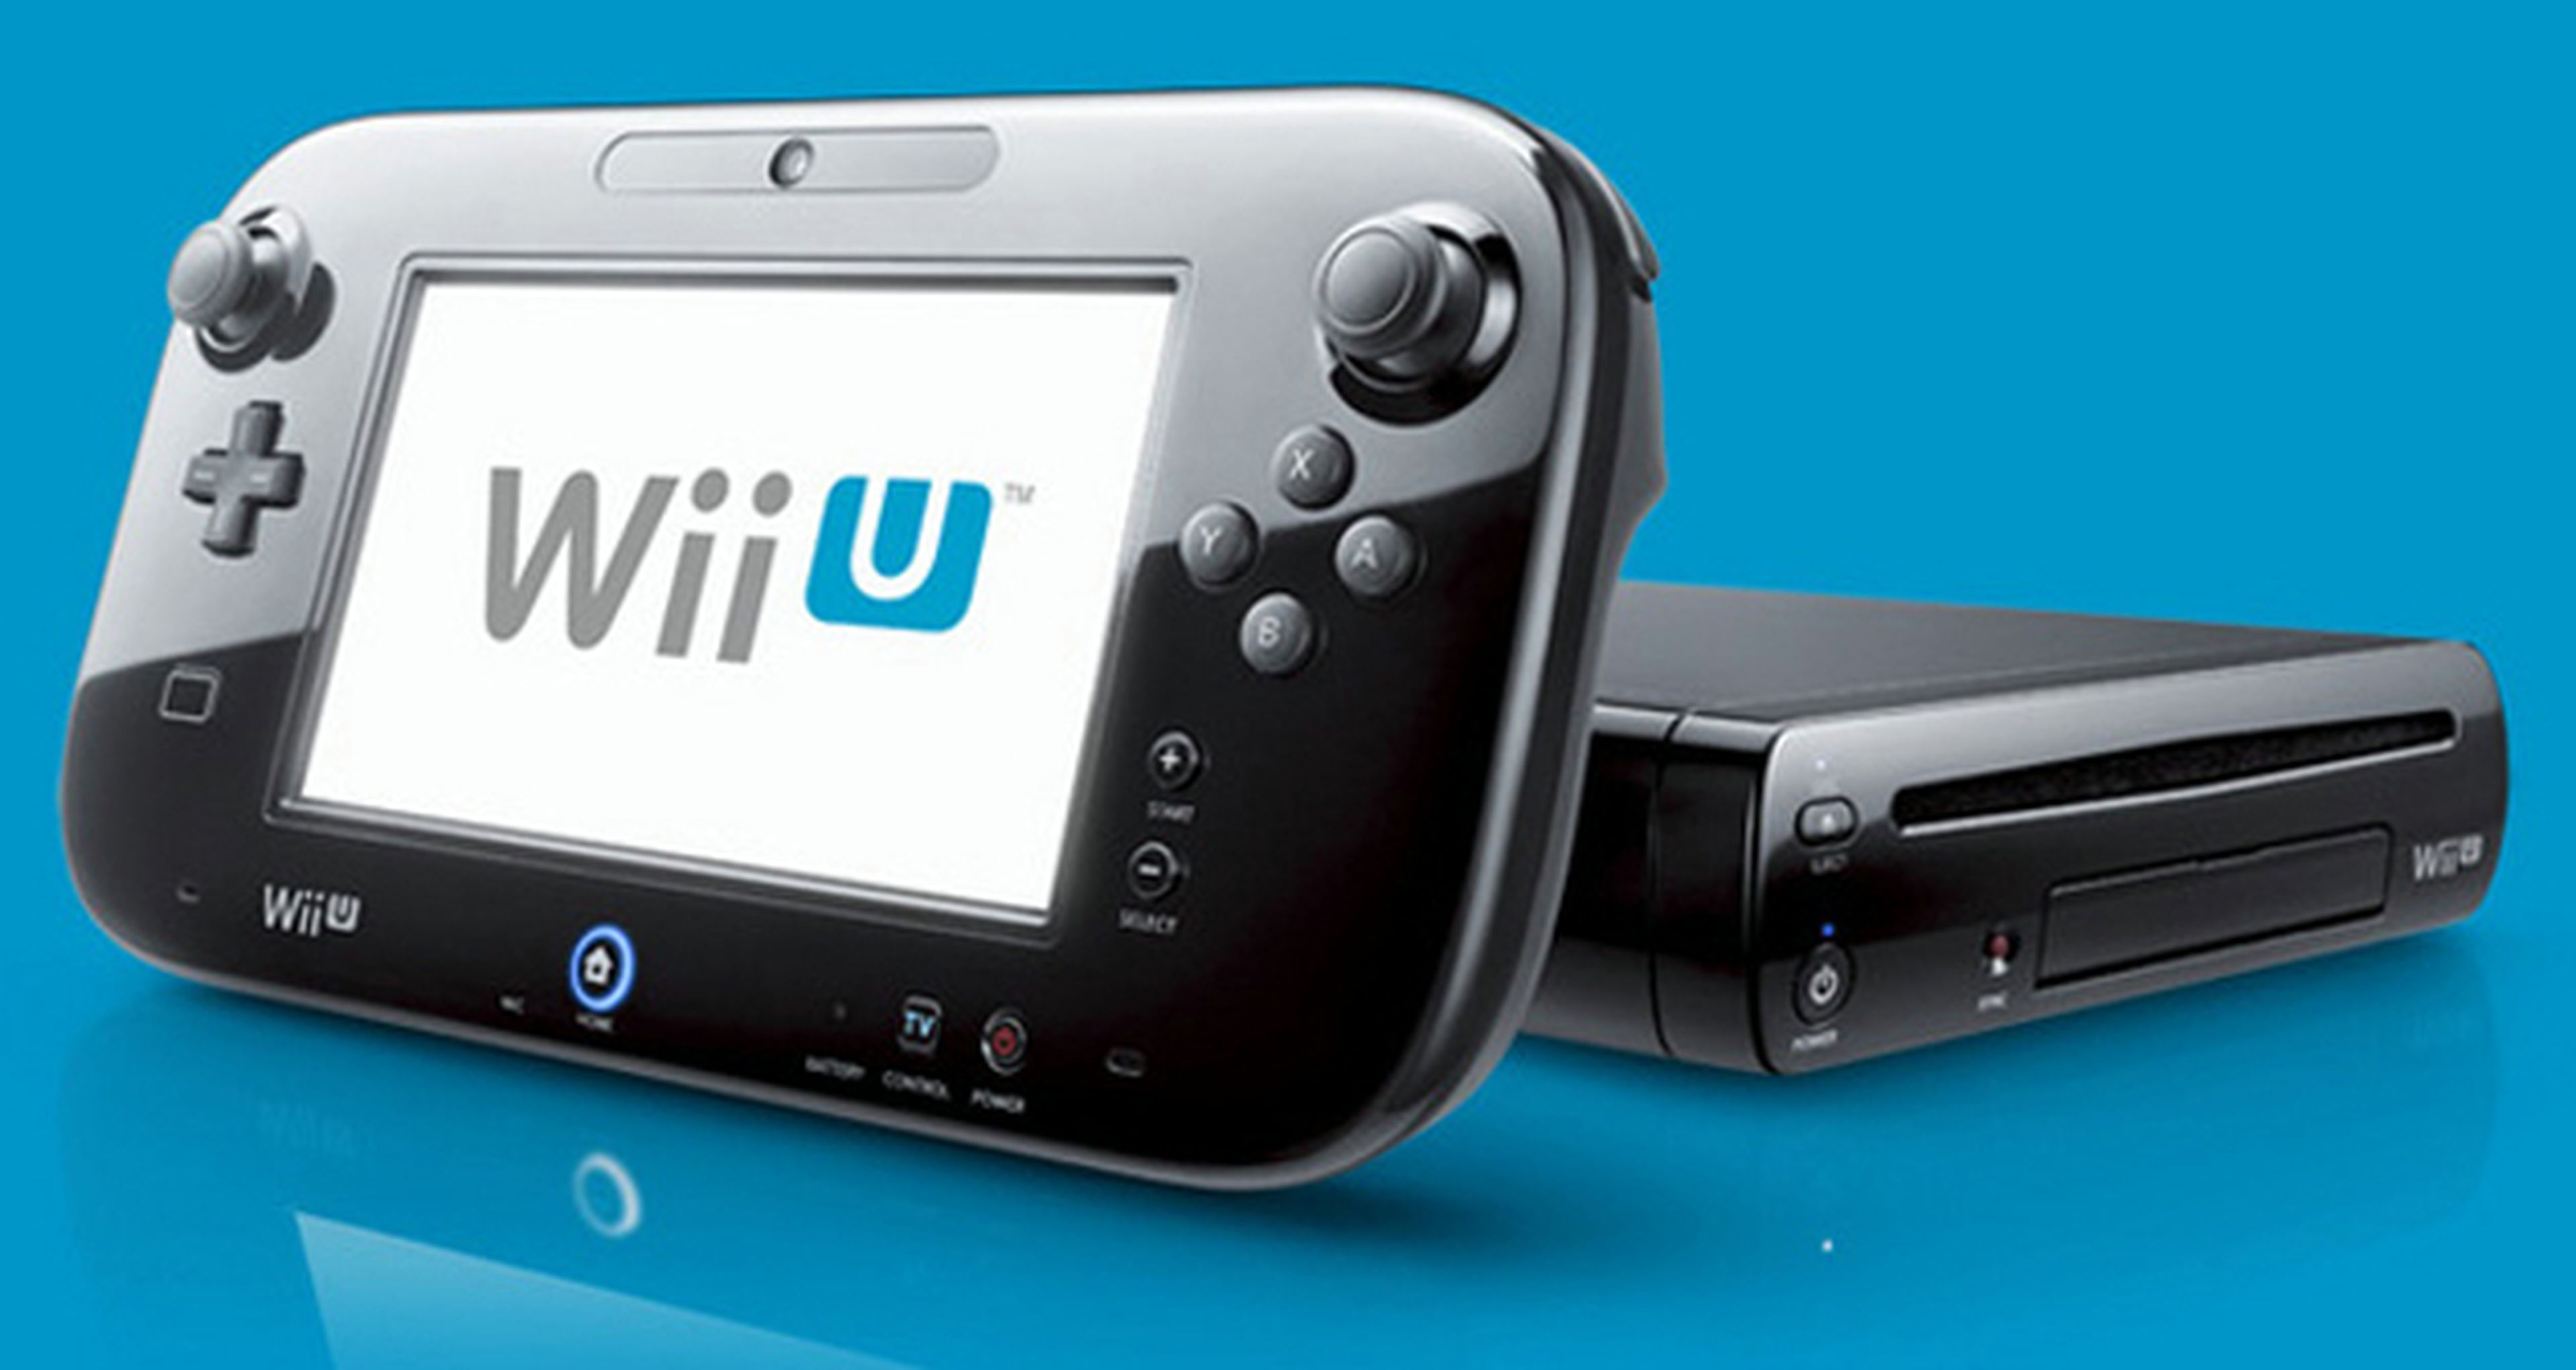 Juegos Nintendo Wii Fisicos Paquete De 10